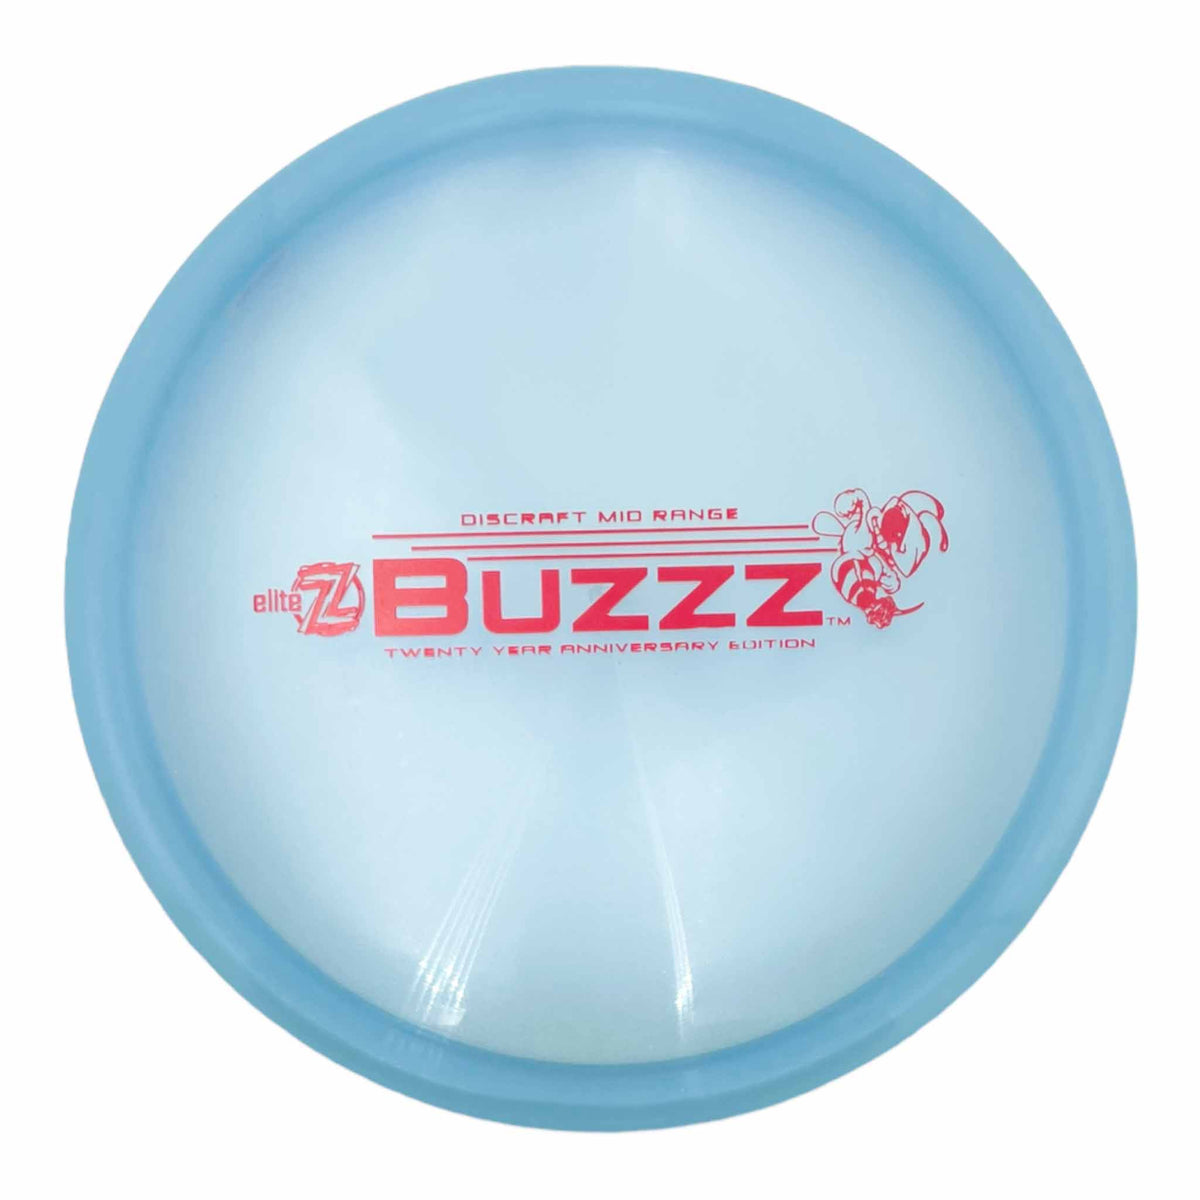 Discraft Elite Z 20 Year Anniversary Edition Buzzz midrange - Blue / Red